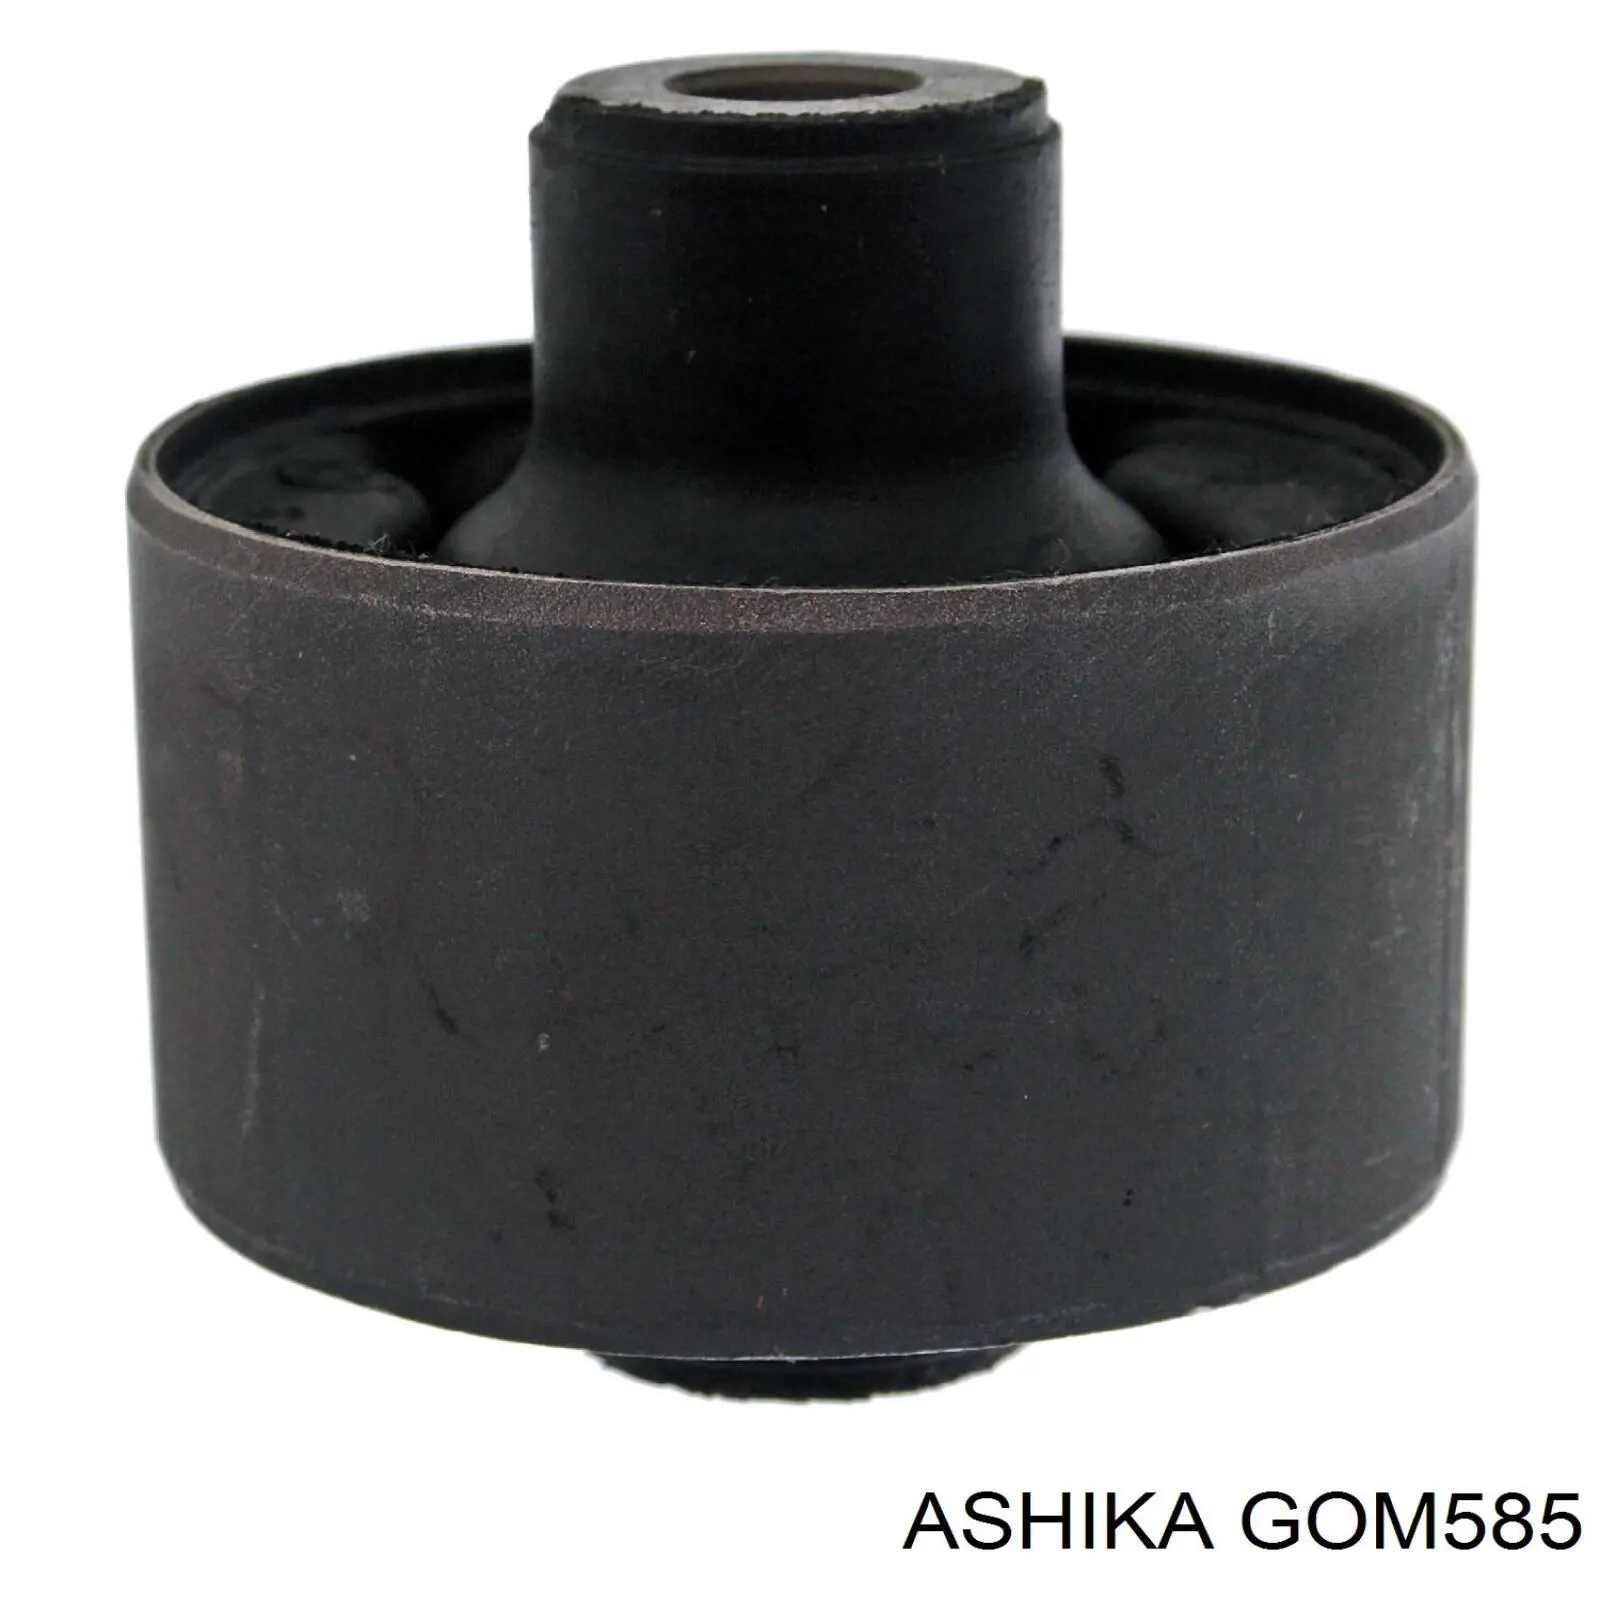 GOM-585 Ashika bloque silencioso trasero brazo trasero delantero